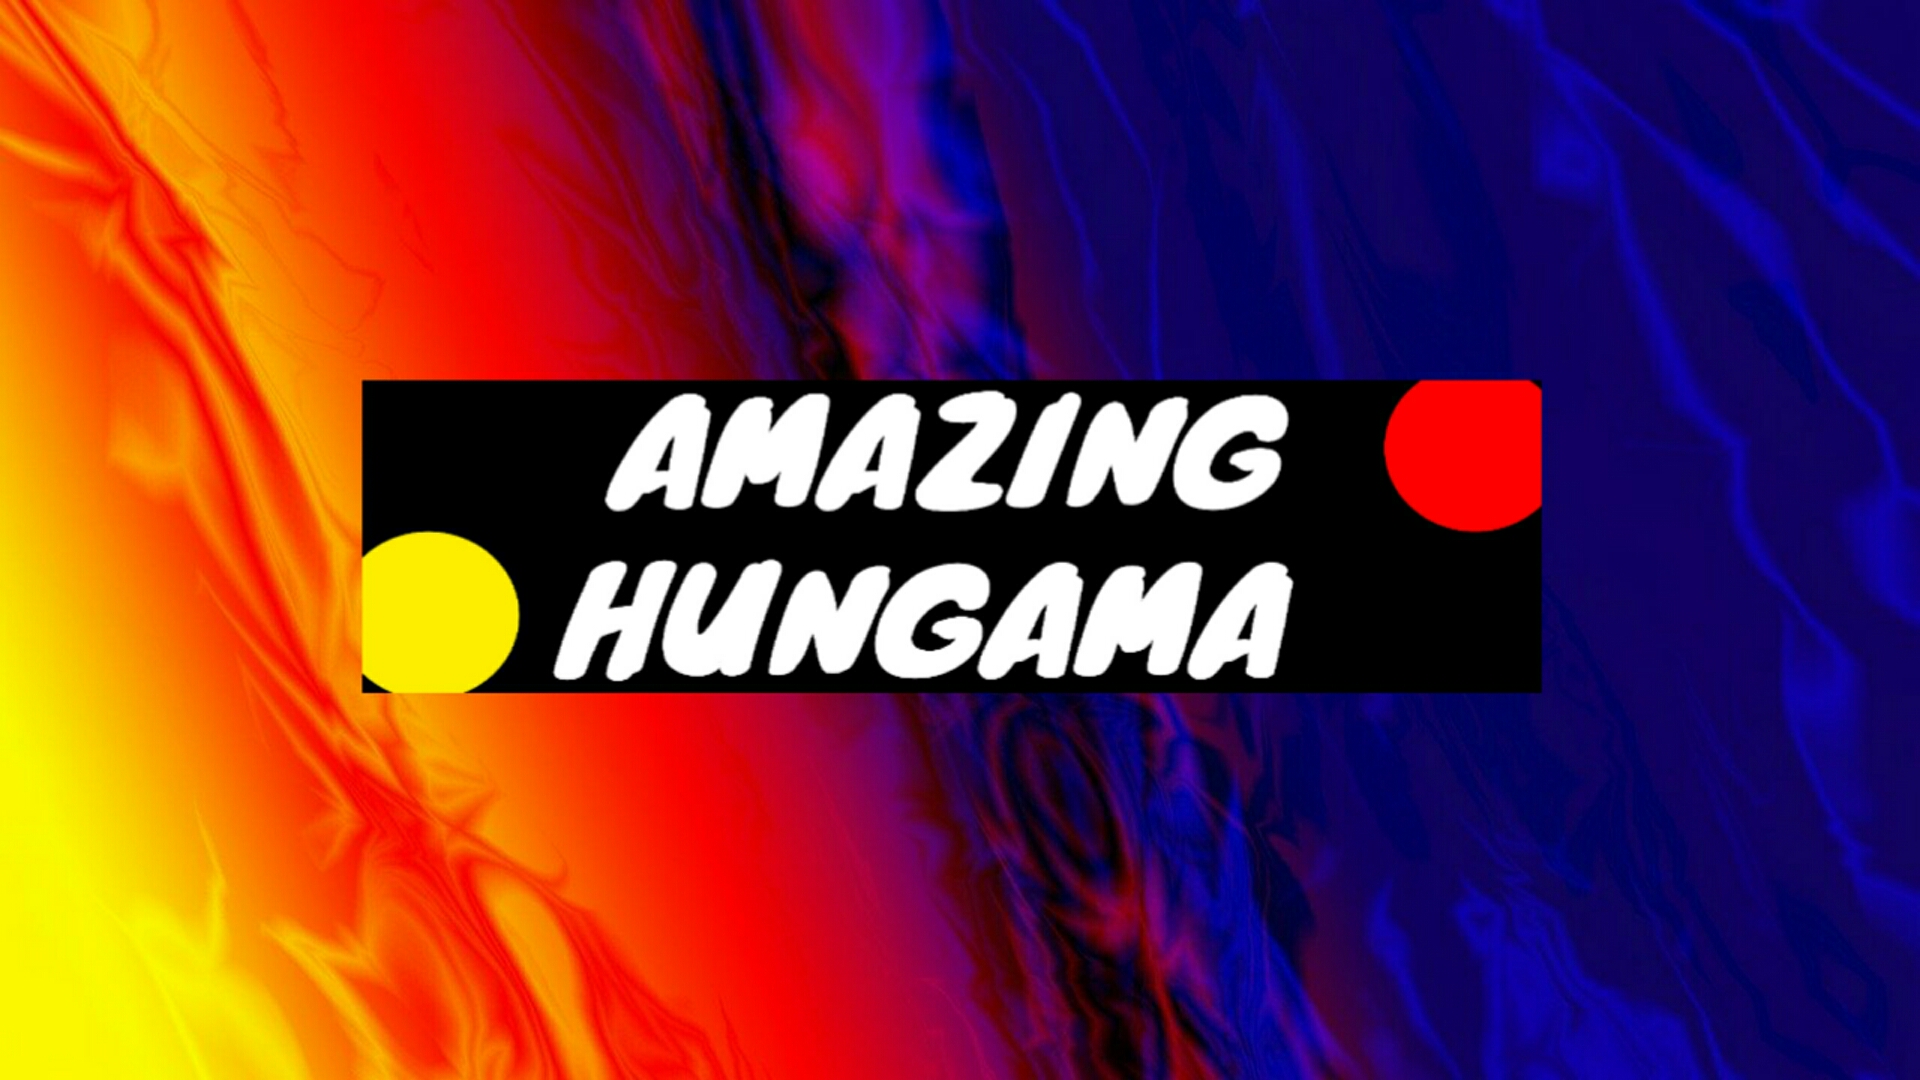 Amazing Hungama